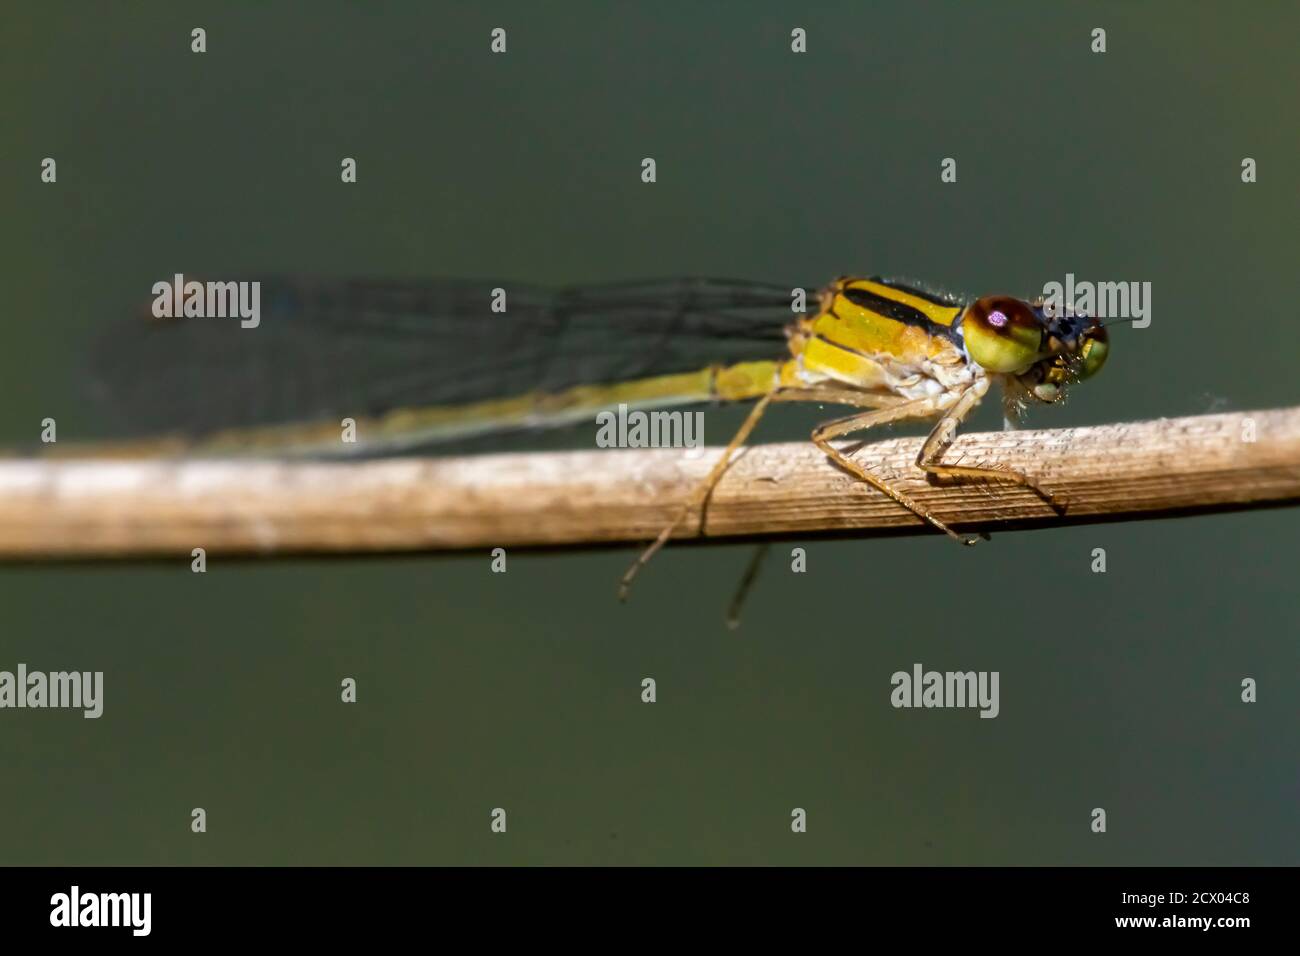 Primo piano immagine macro isolata di una posita di Ischnura (fragile forktail) una mosca che misura circa 25 mm ed è originaria degli Stati Uniti orientali. Questo giallo Foto Stock